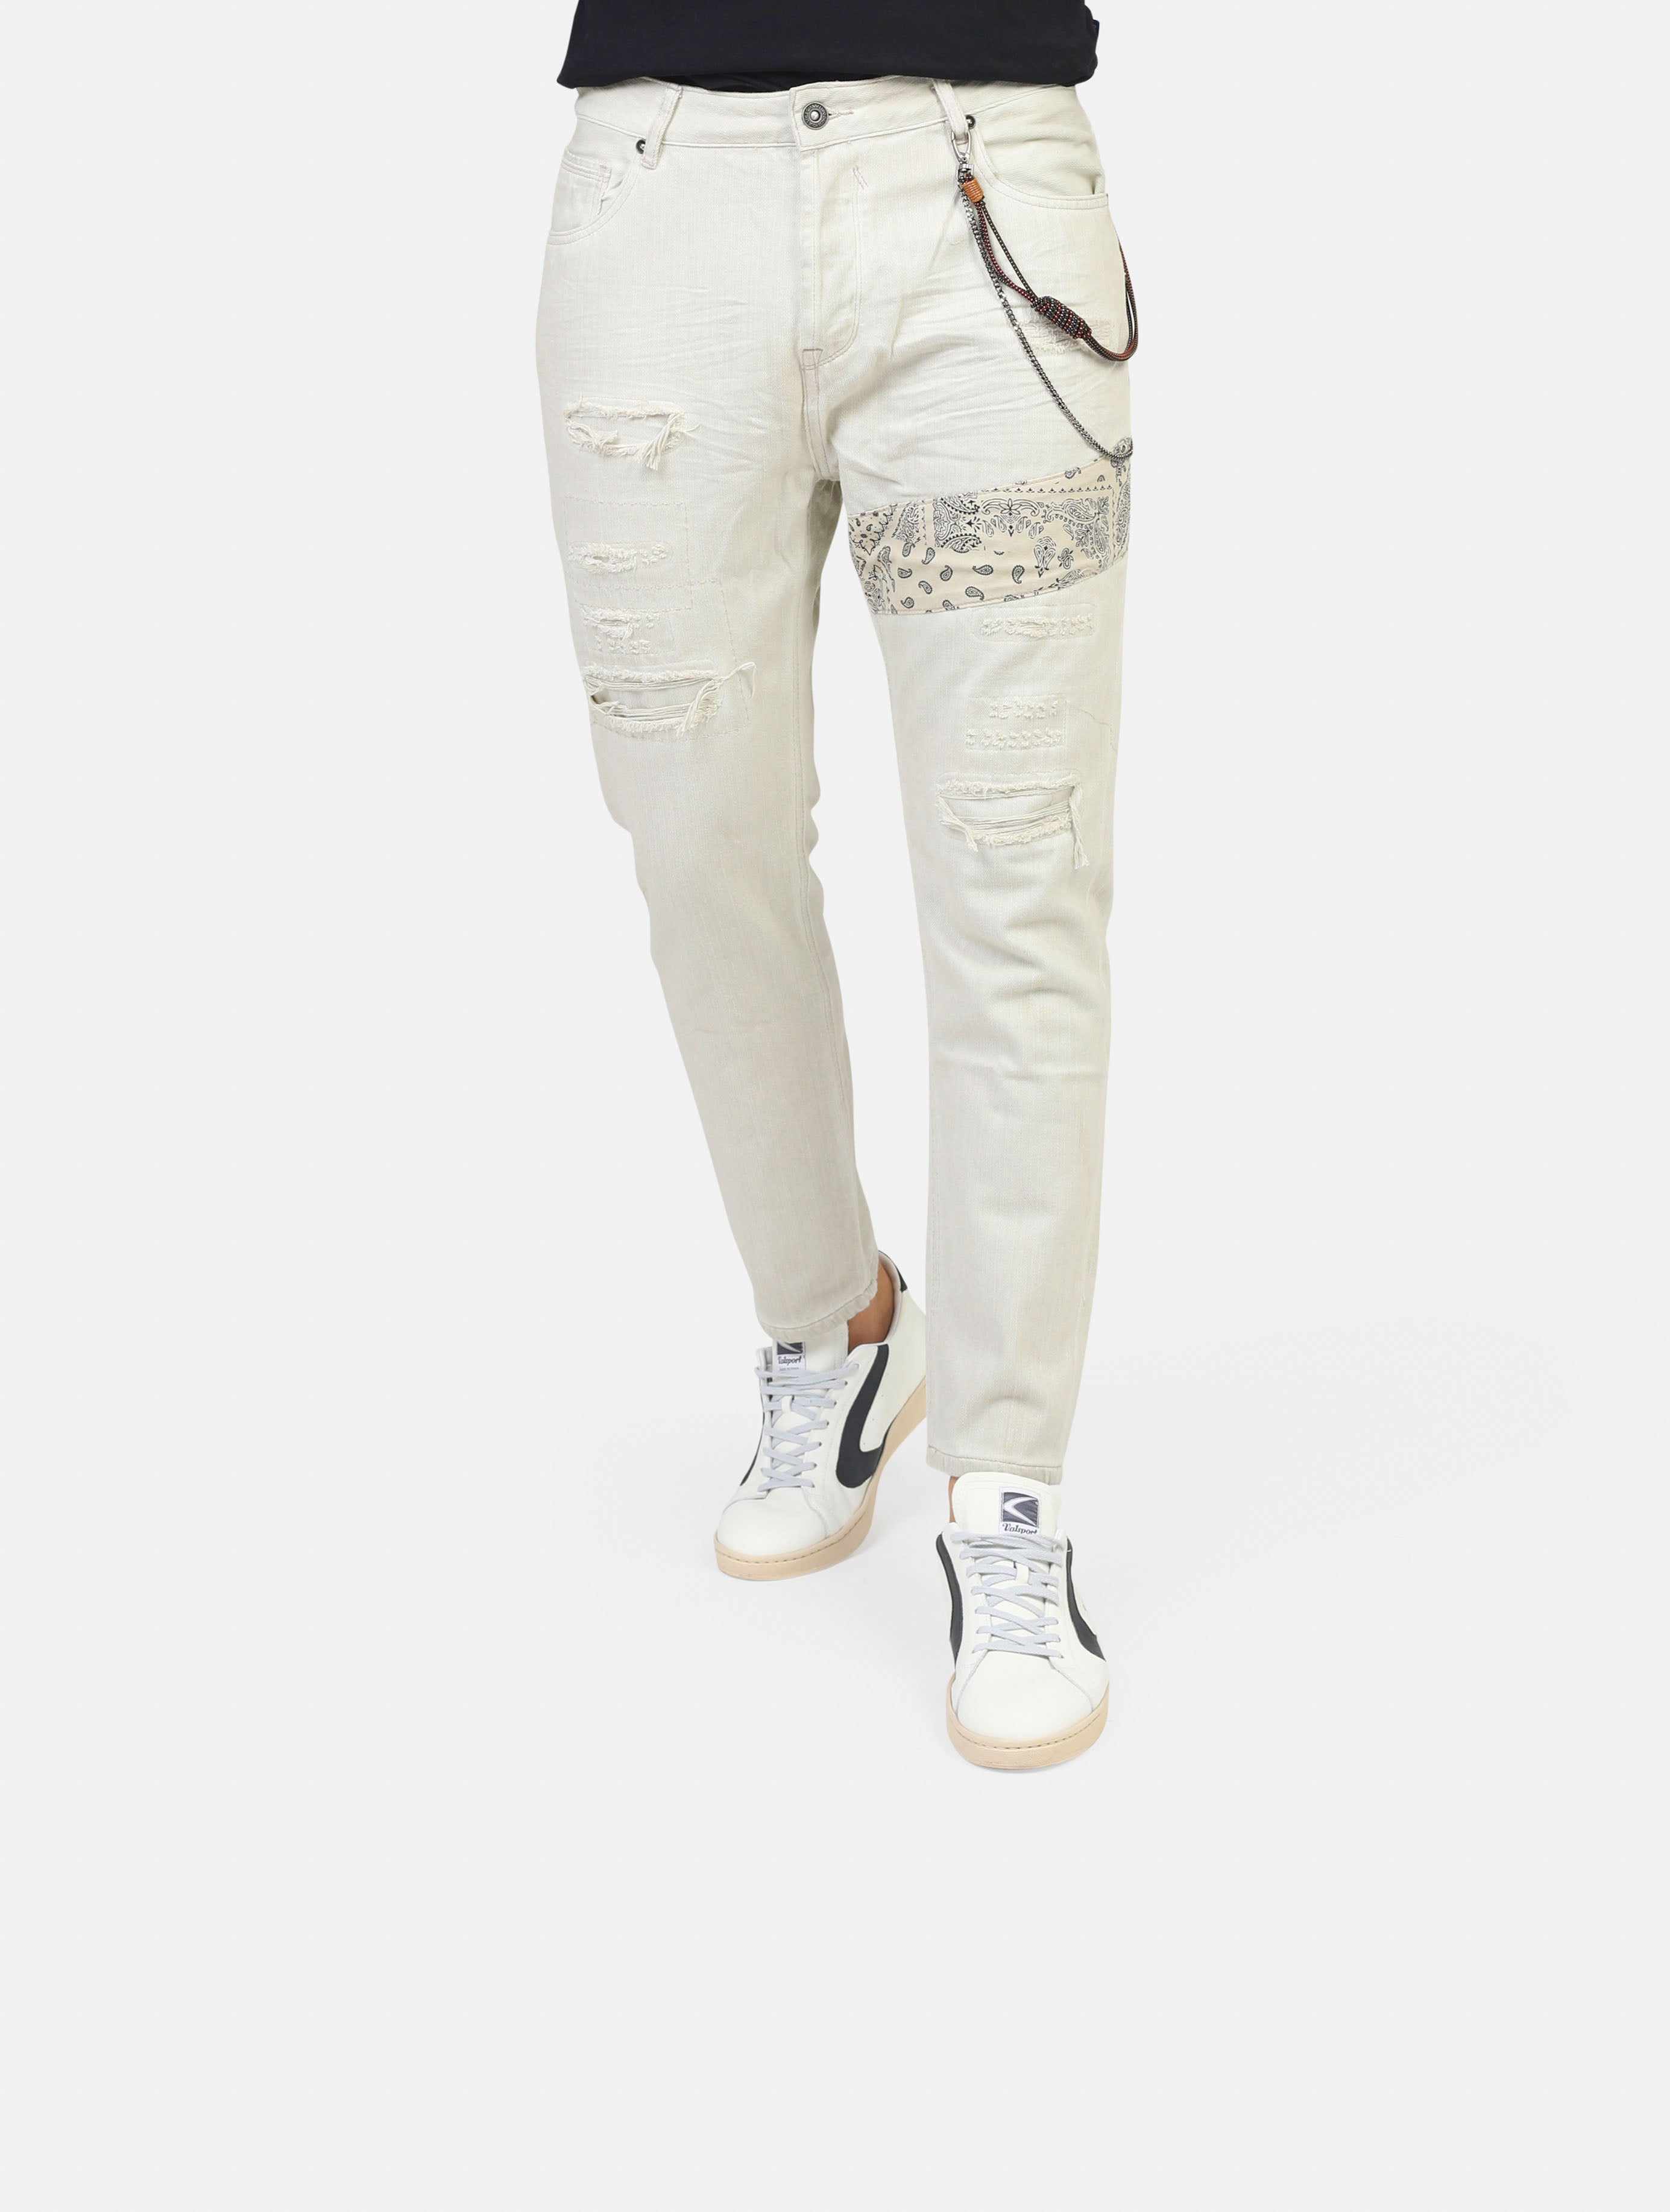 Jeans gianni lupo -  white uomo  - 1